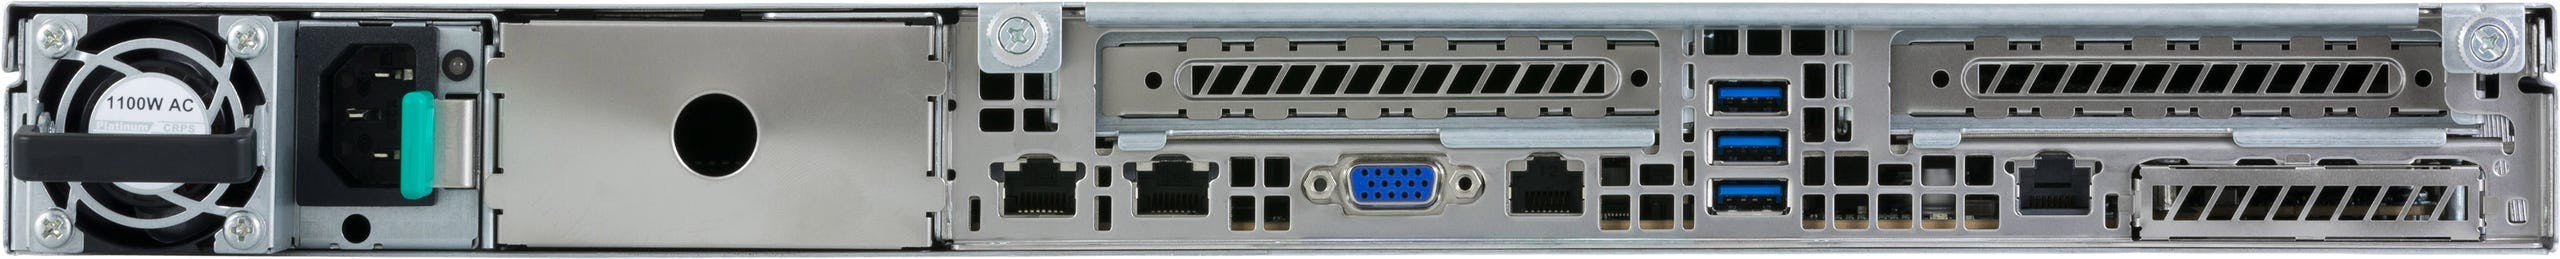 Jackal Pro 1U rear ports, namely USB 3.0, VGA out, Serial port, Gigabit LAN, and management via LAN port.